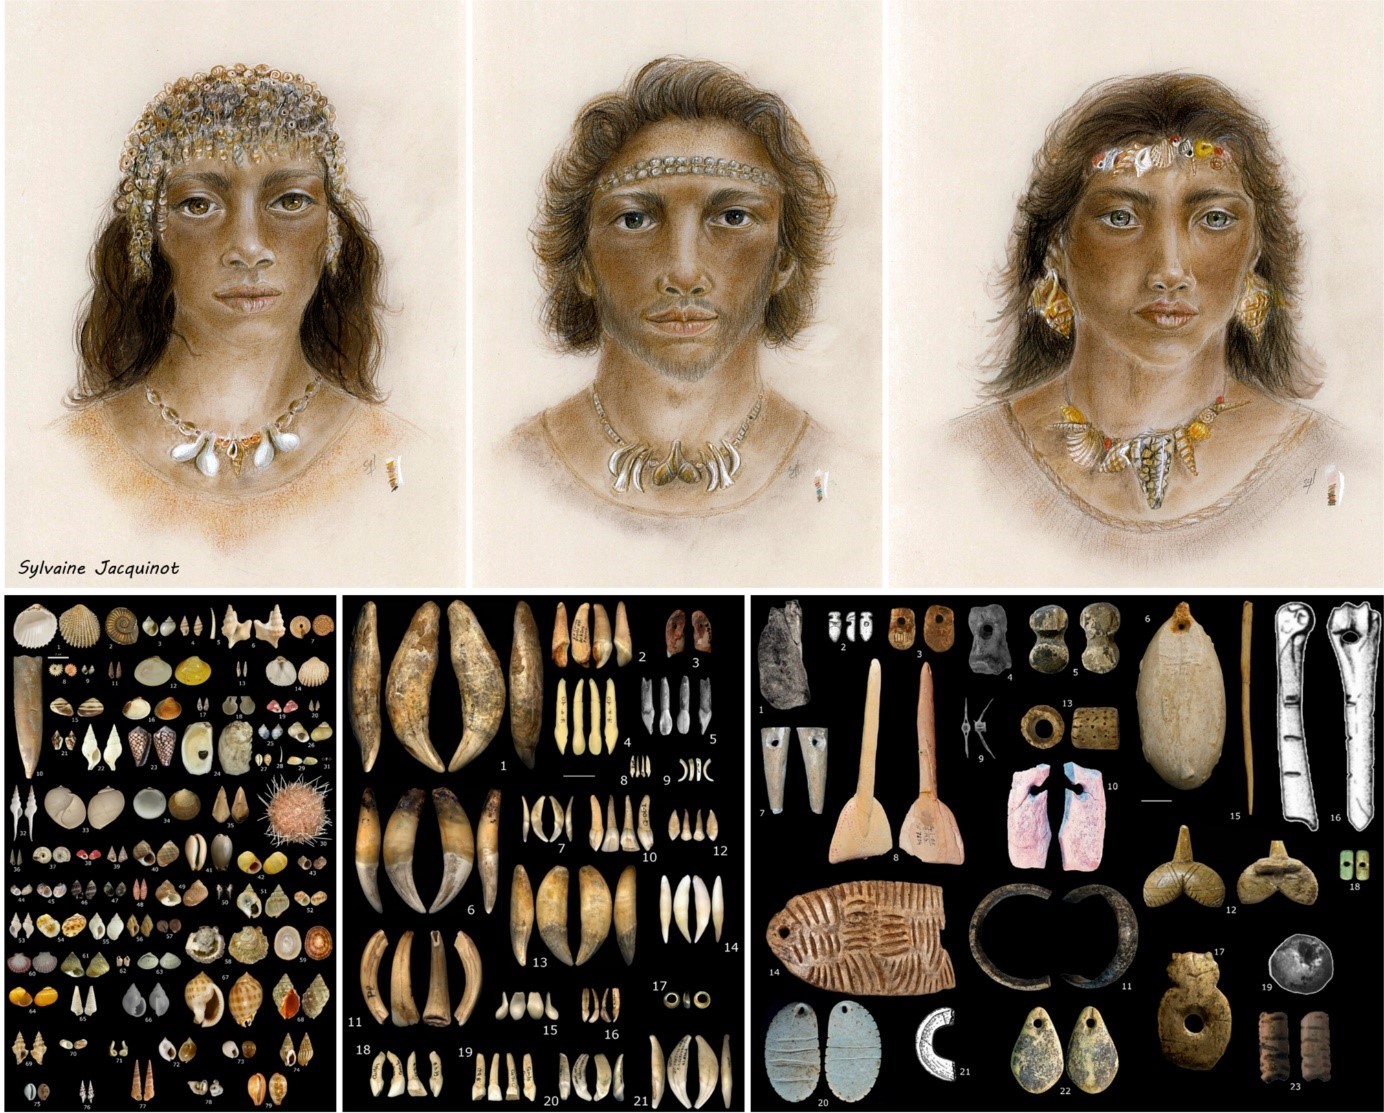 Visages ornés d’ornements corporels connus pour le Gravettien et types d’objets de parure portés au cours du Gravettien